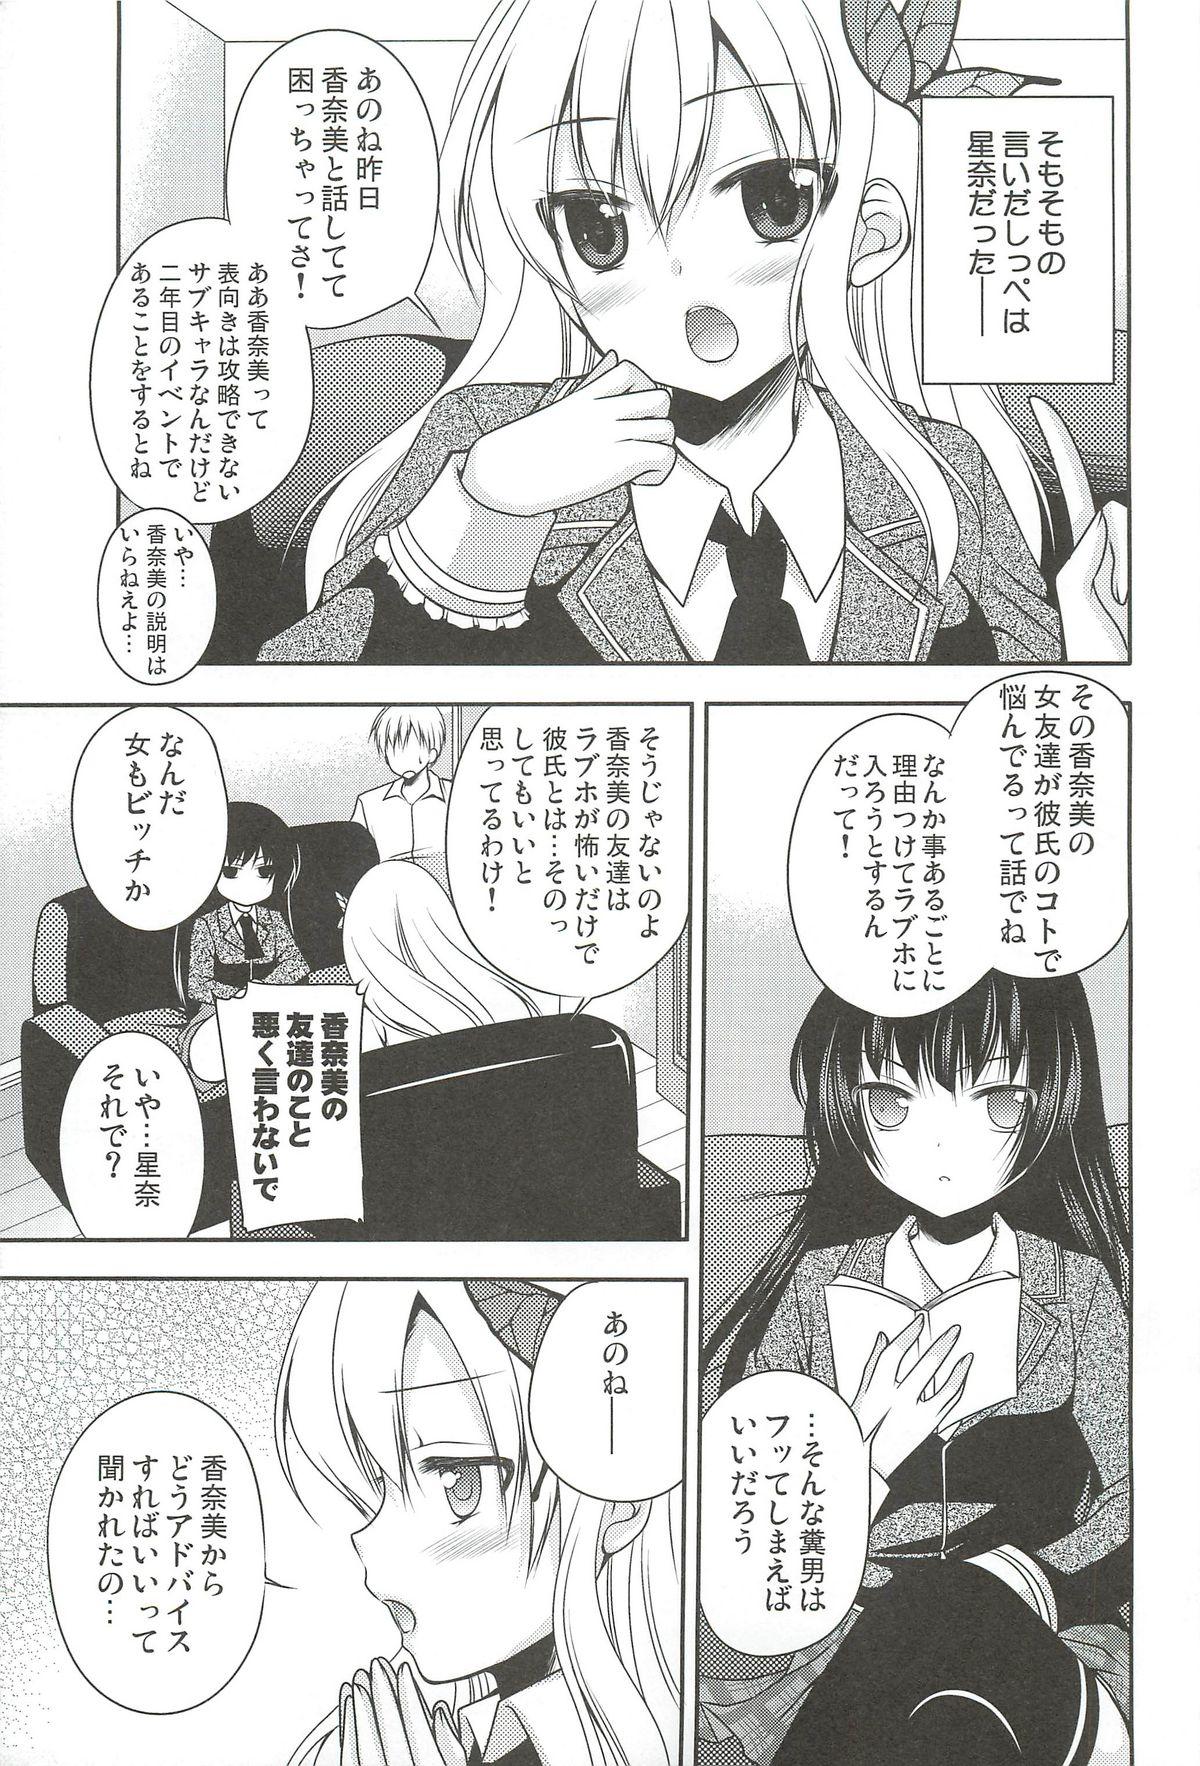 Soapy Yozora wa Ore no Tenshi - Boku wa tomodachi ga sukunai Amatuer - Page 5